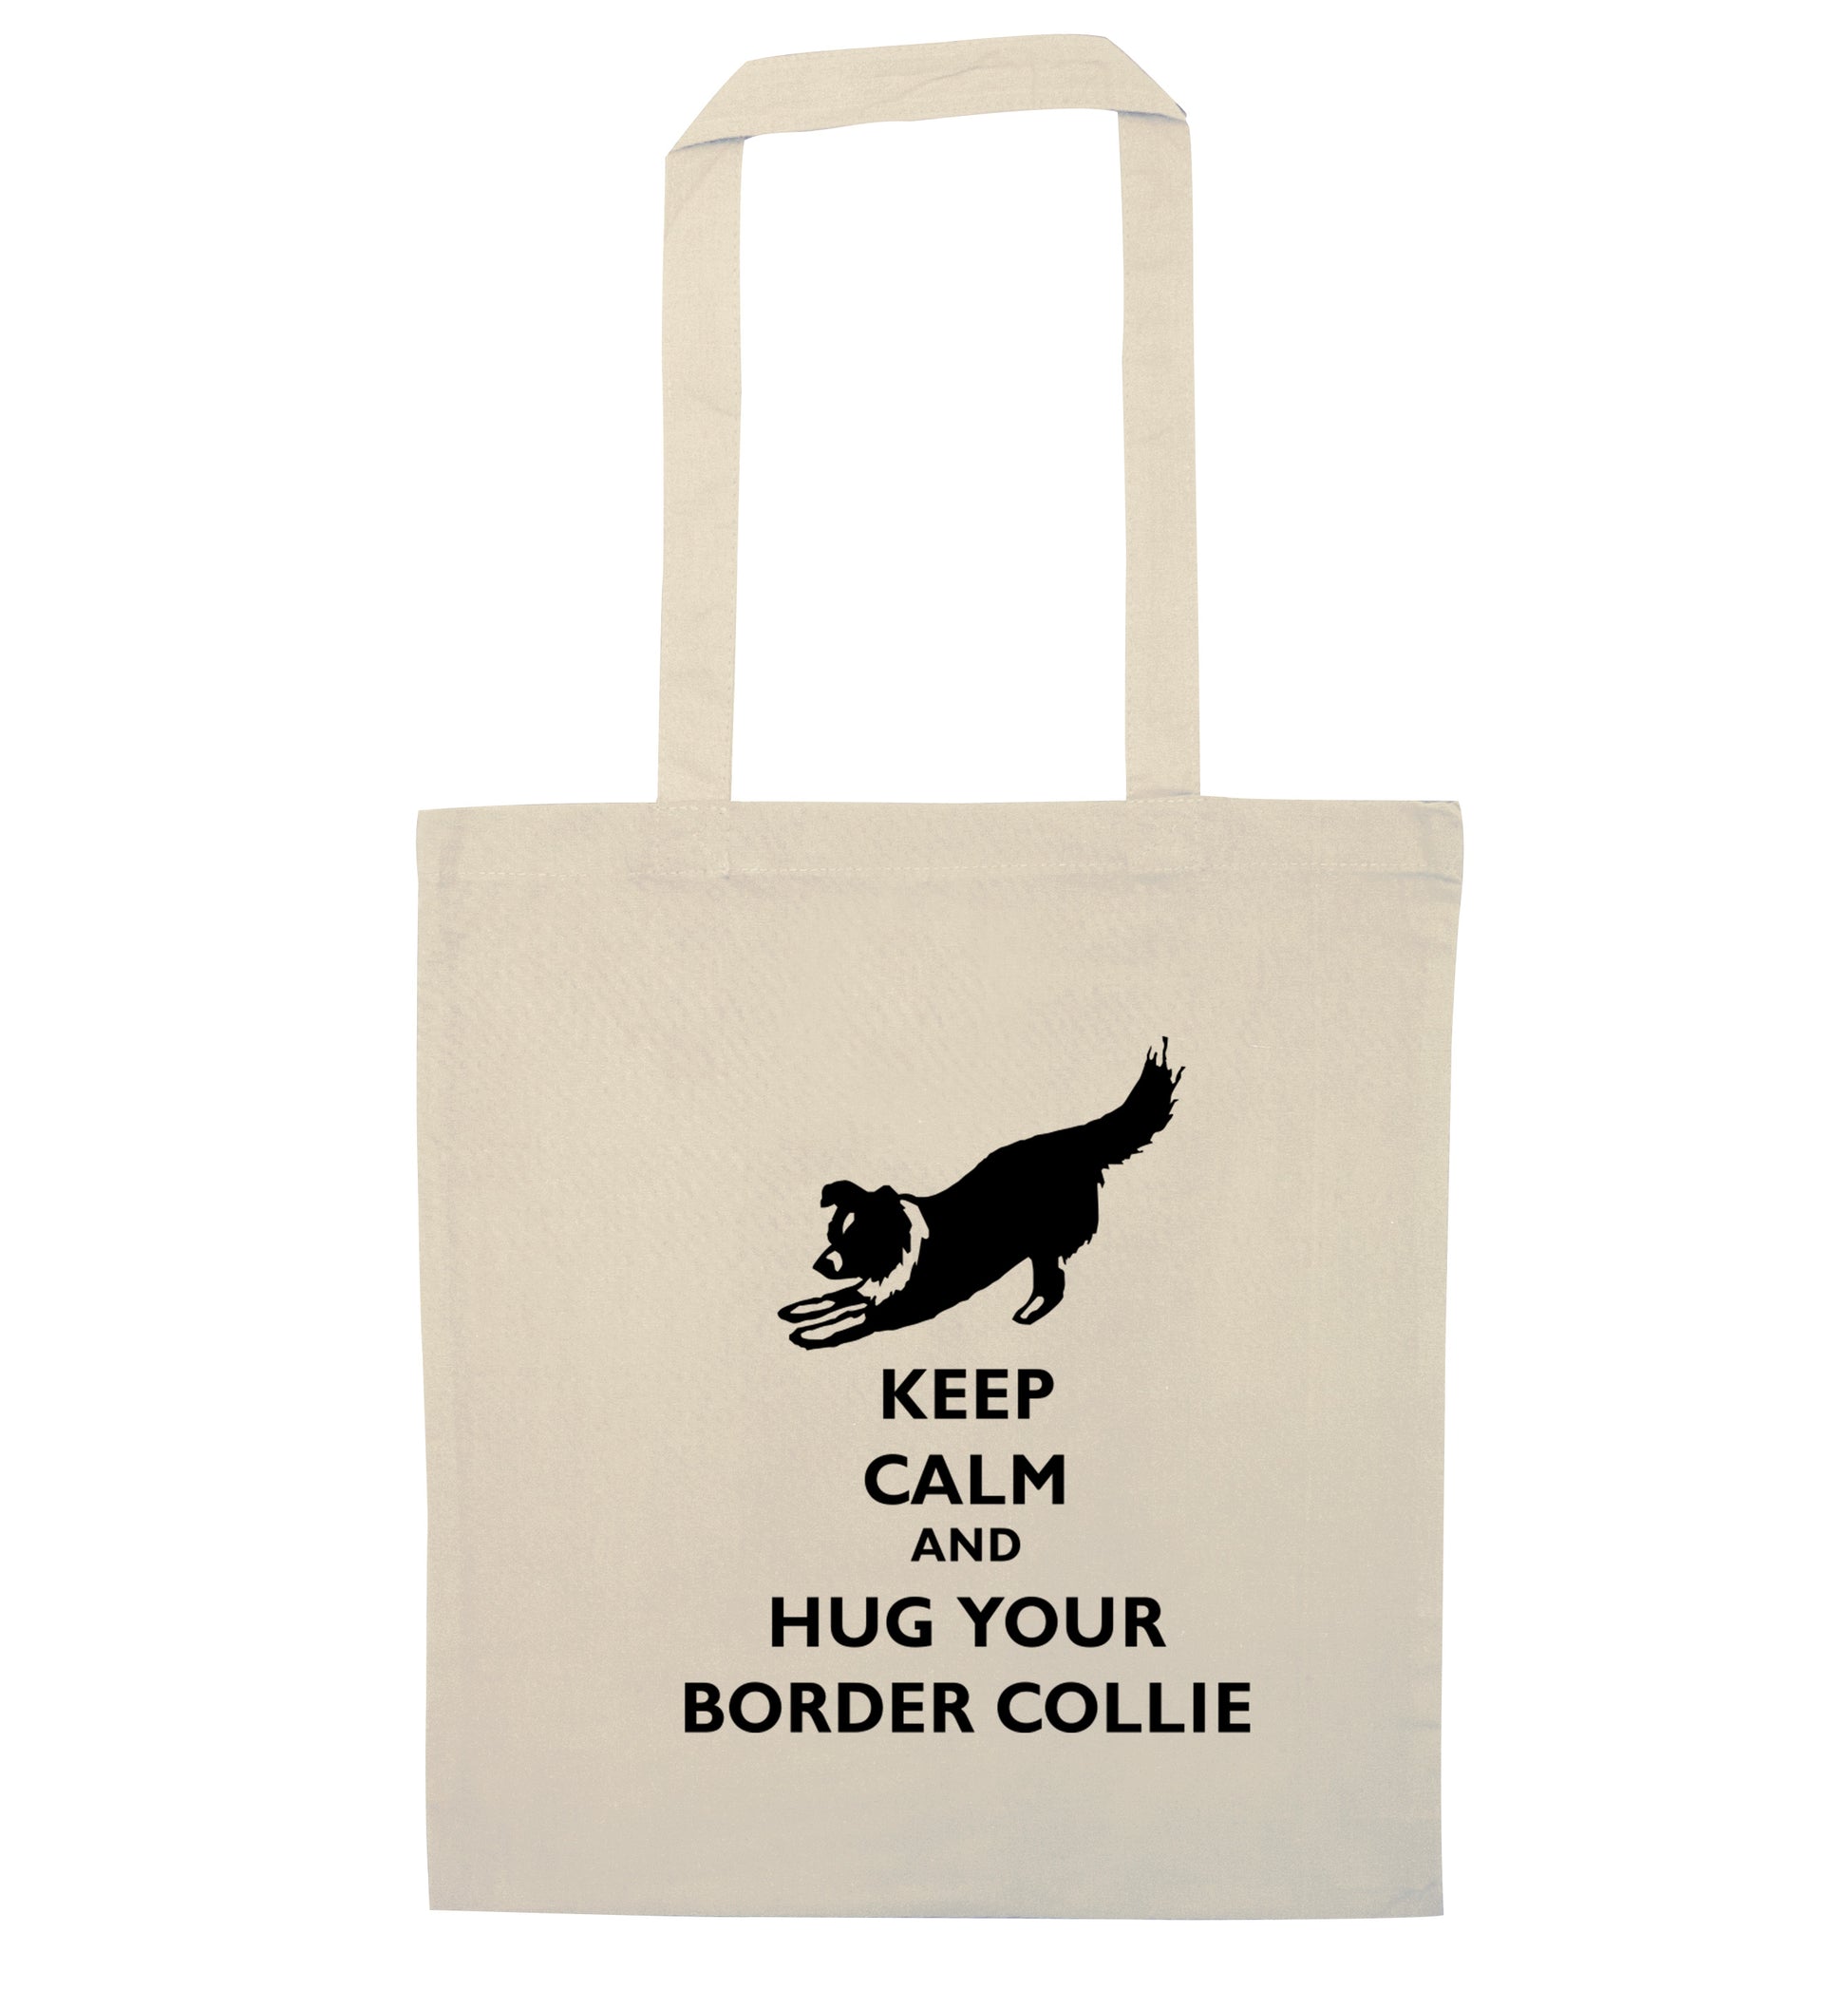 Keep calm and hug your border collie natural tote bag